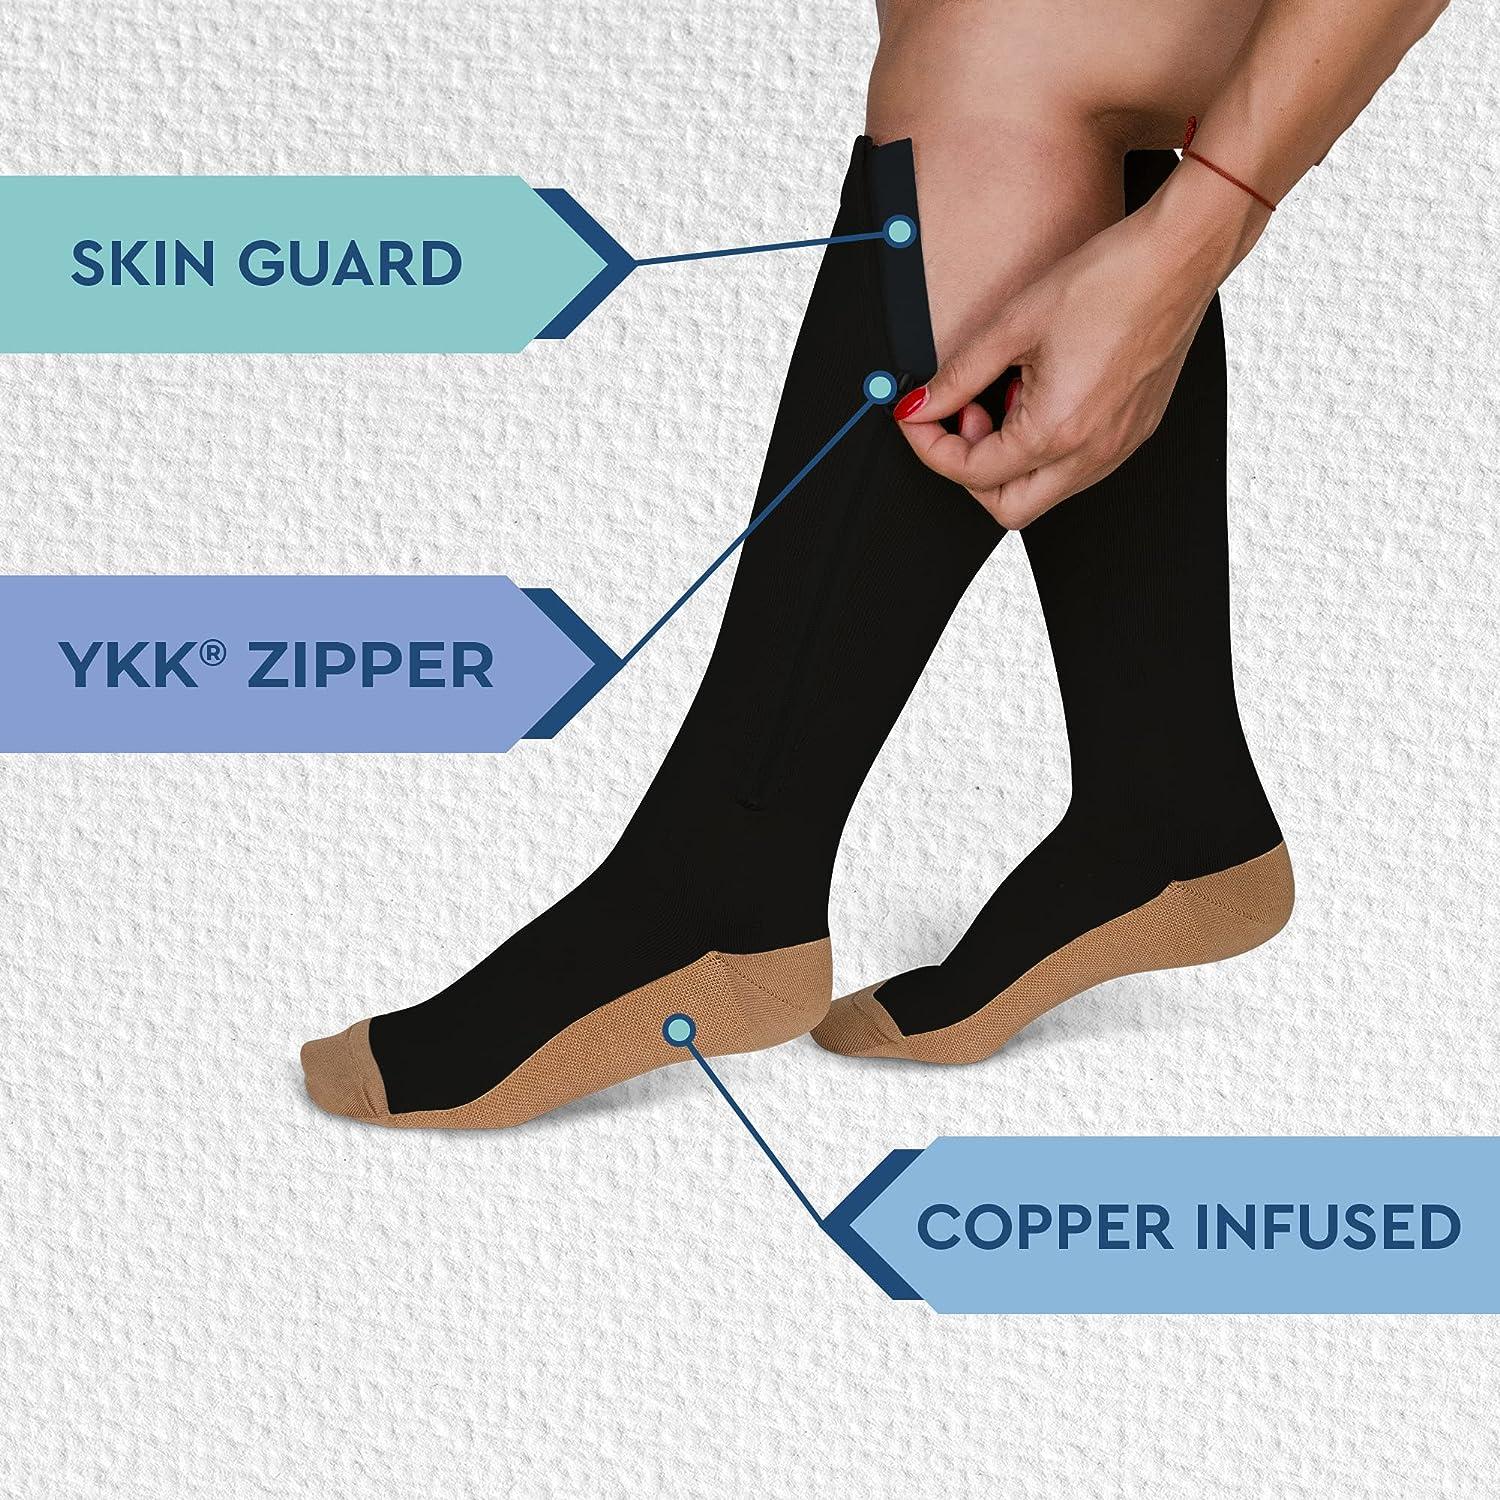 The Thread  Why Wear Compression Socks? – Threads